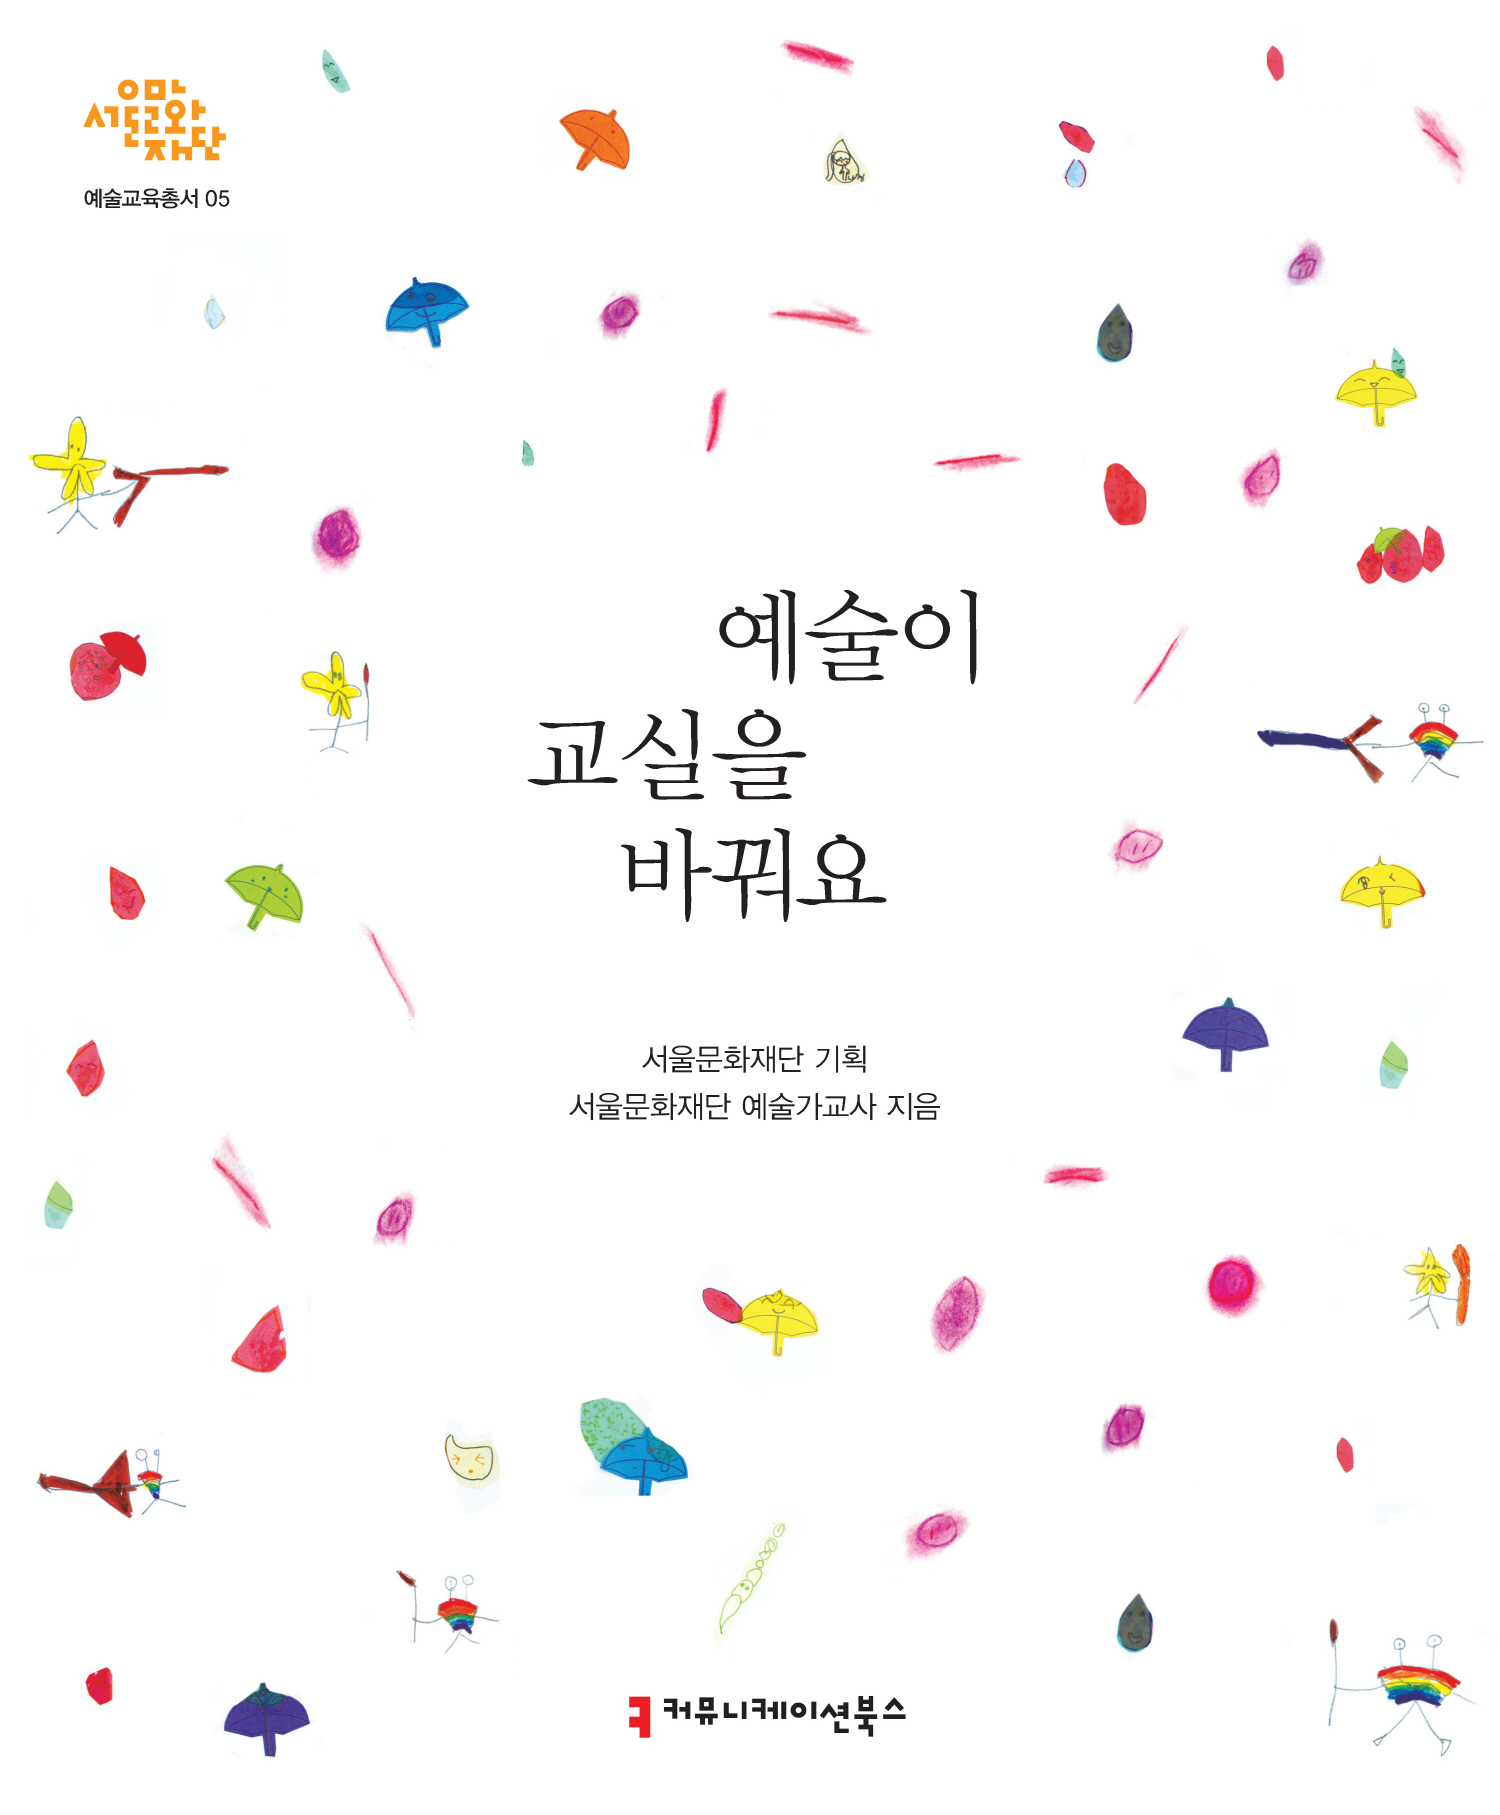 서울문화재단, 미적체험 예술교육 개발해 지난 10년간 초등교육 성과 담은 도서 ‘예술이 교실을 바꿔요’ 발간